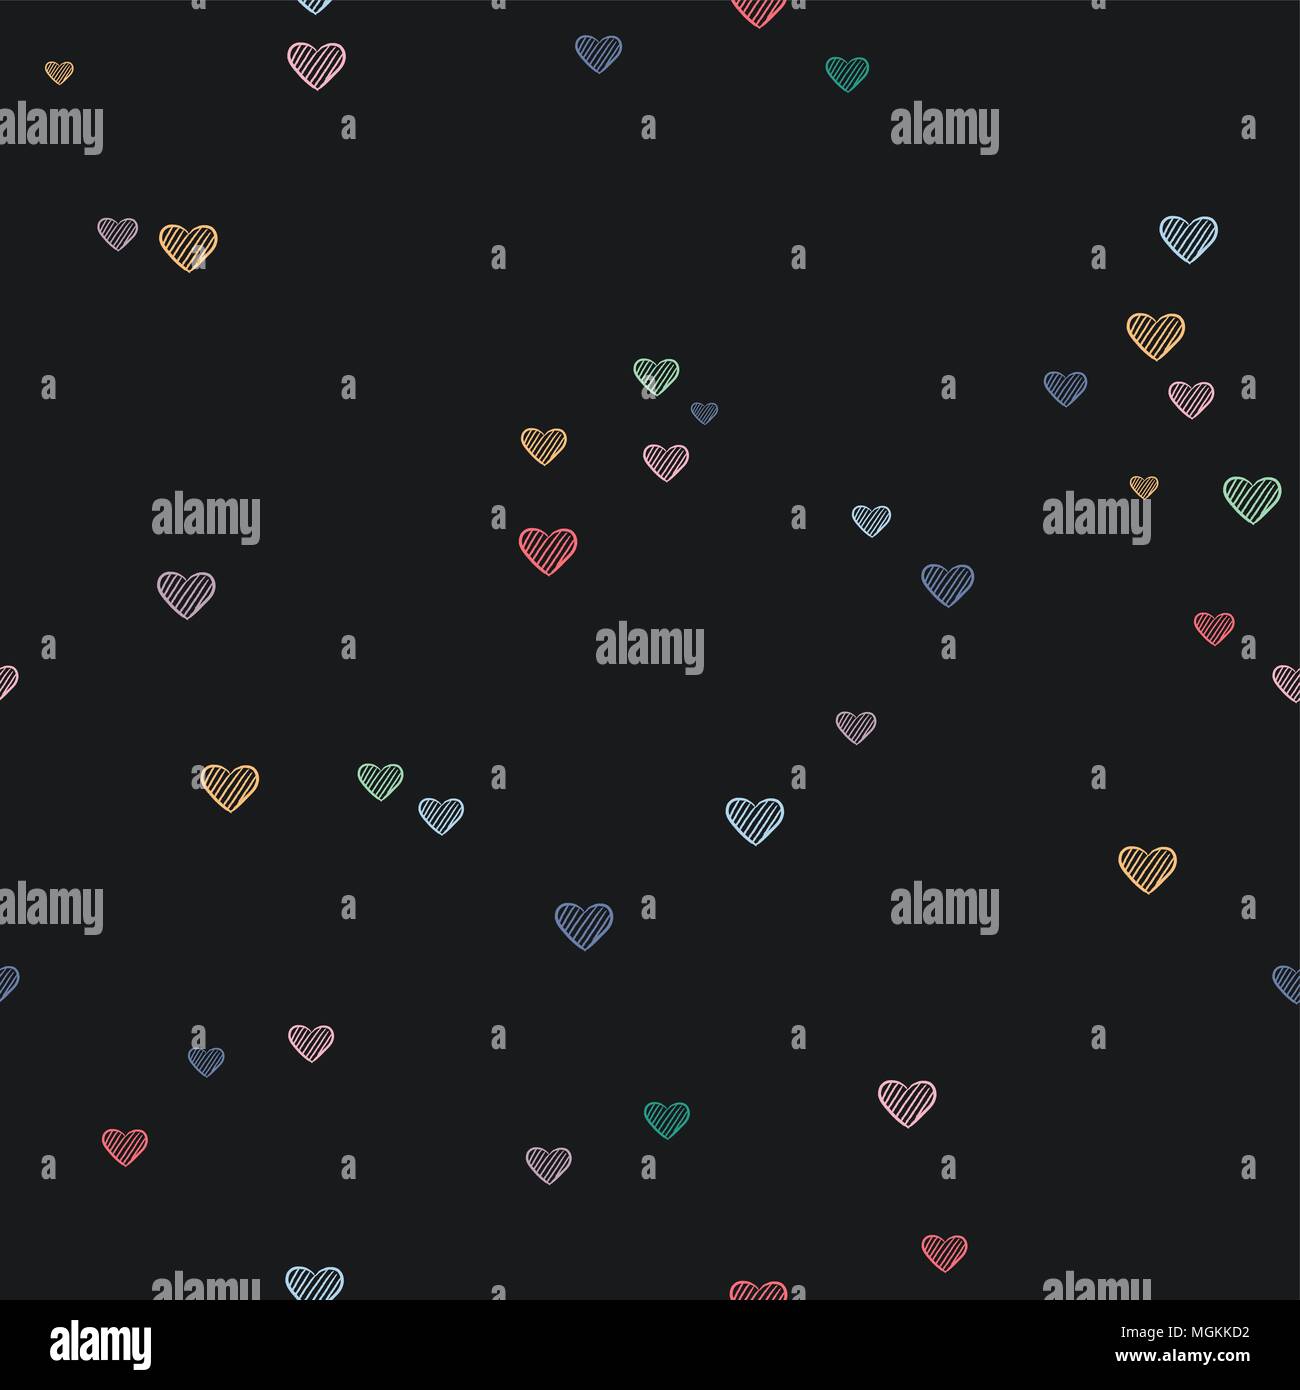 Cute Herzform nahtlose Muster von Hand gezeichnet Chalk Herzen. Liebe doodle Hintergrund Abbildung. EPS 10 Vektor. Stock Vektor